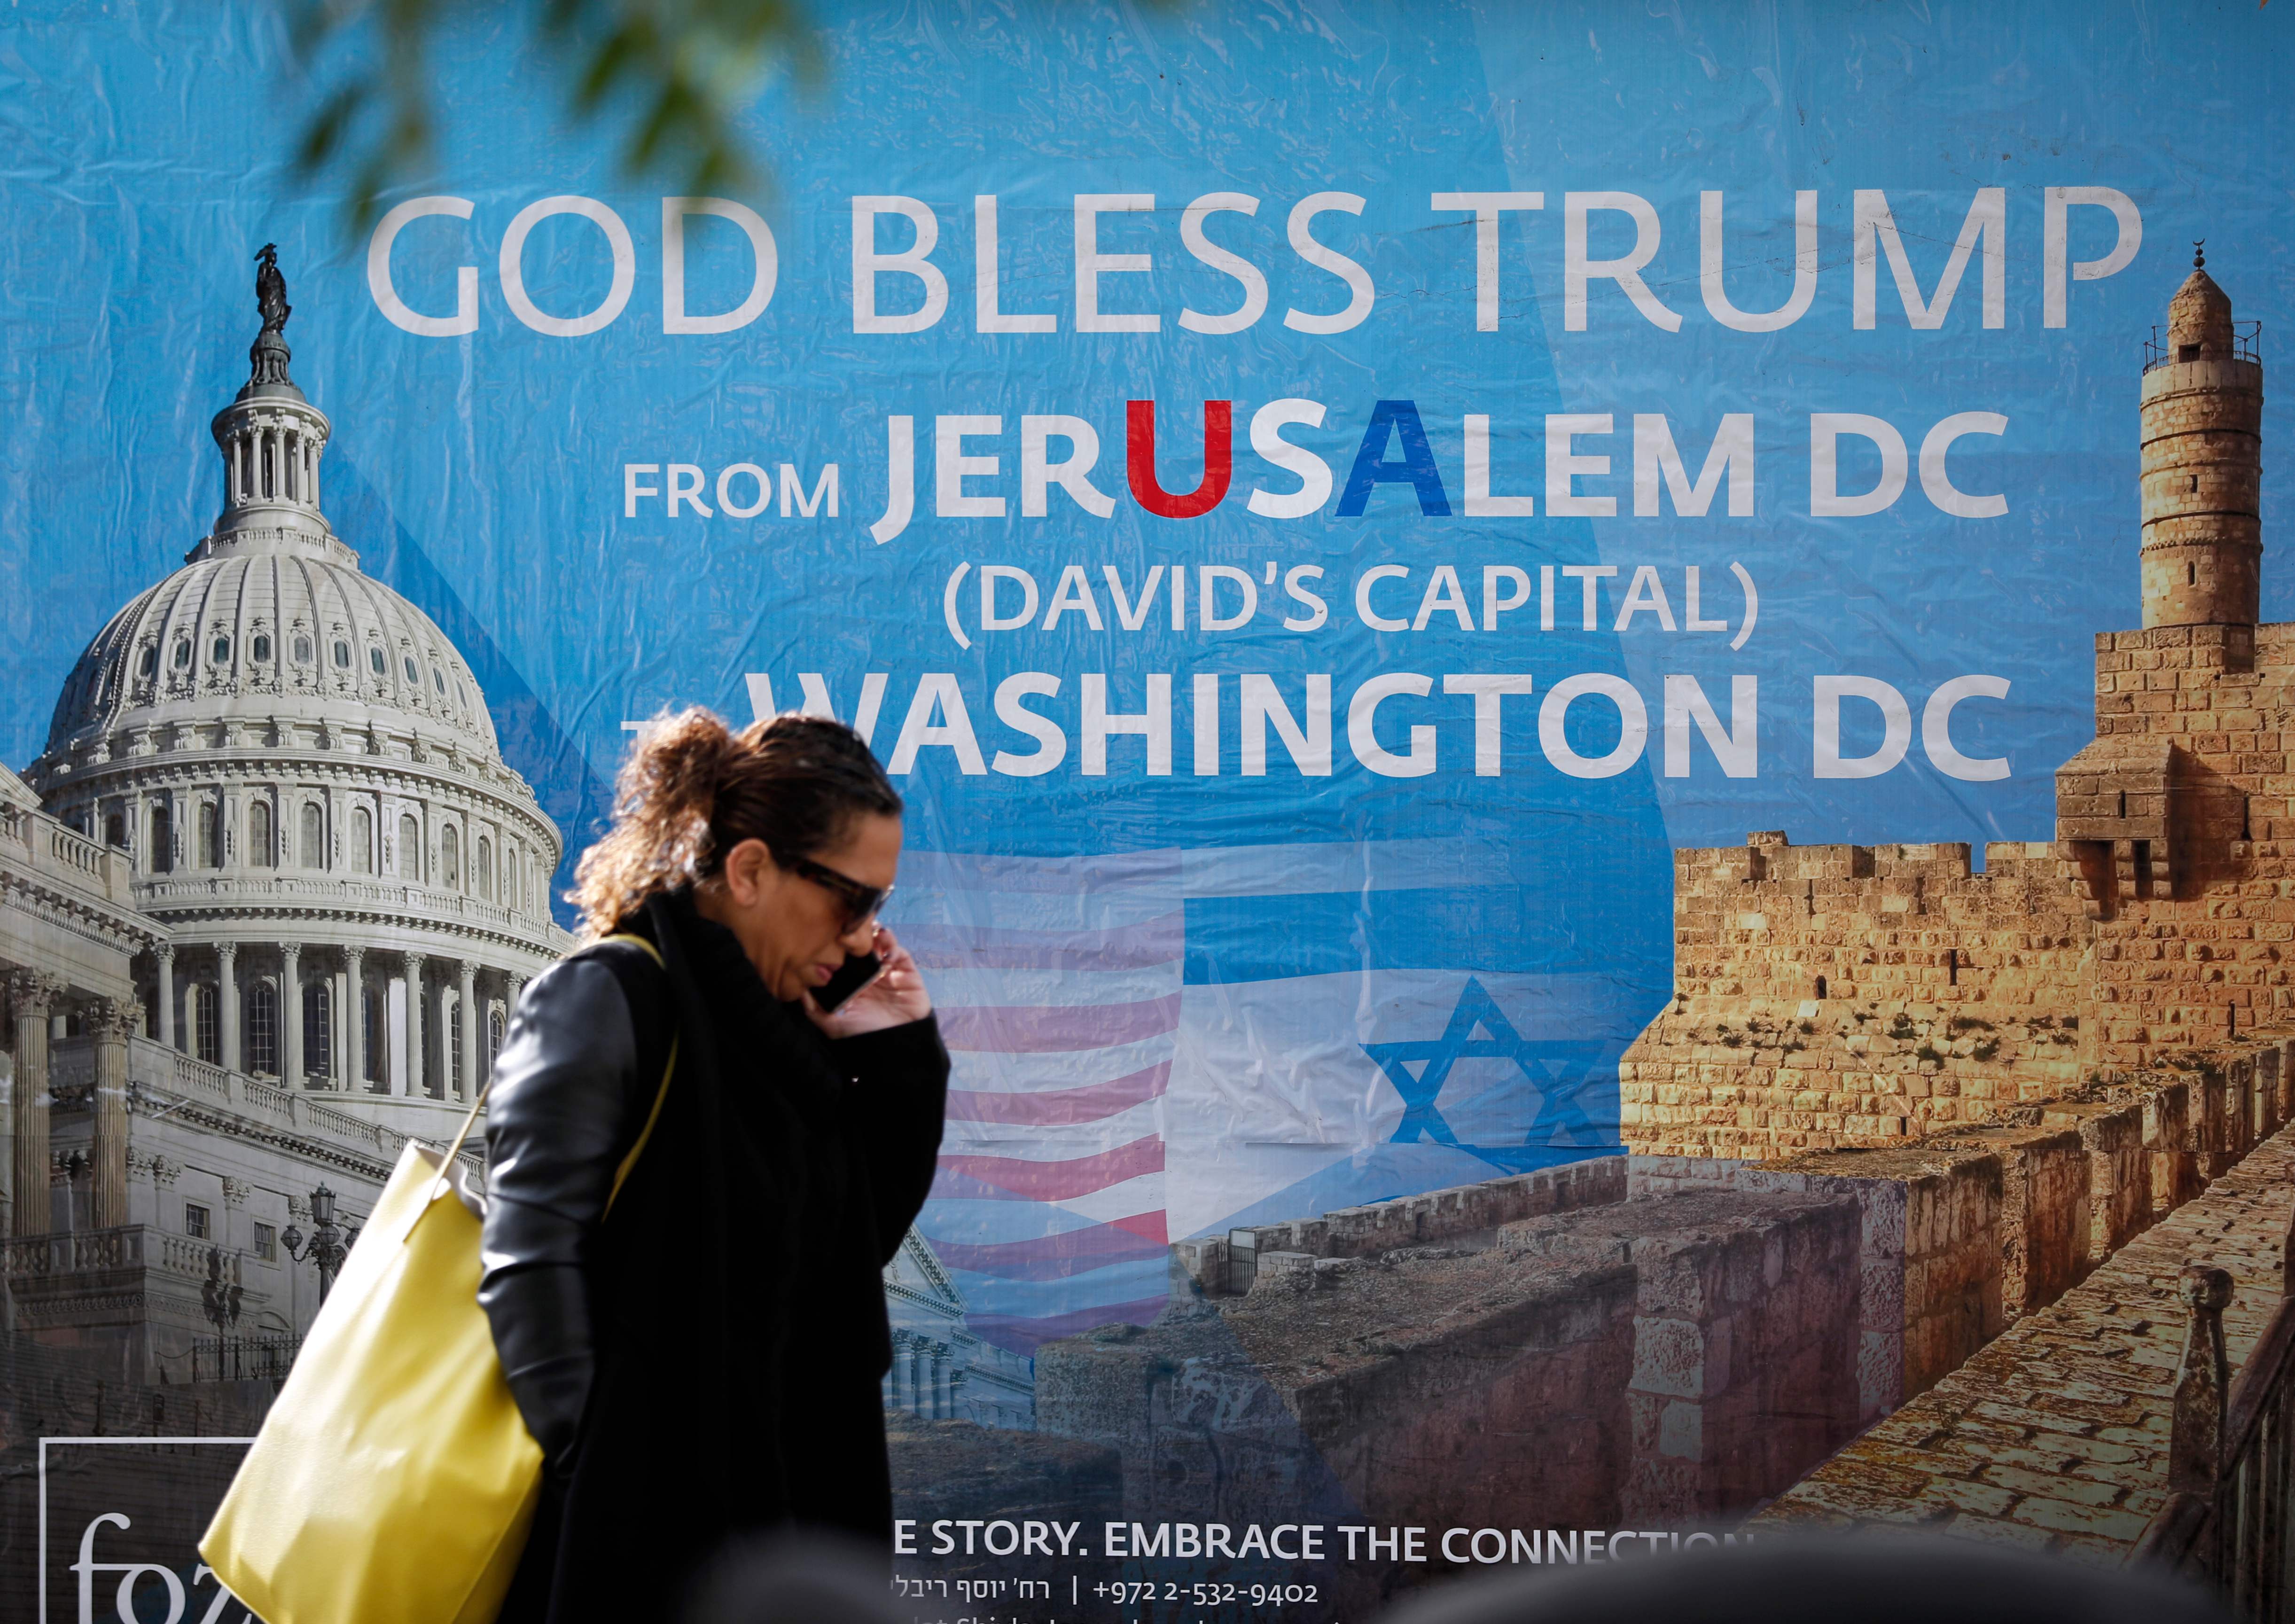 لافتة مؤيدة لقرارات ترامب فى القدس